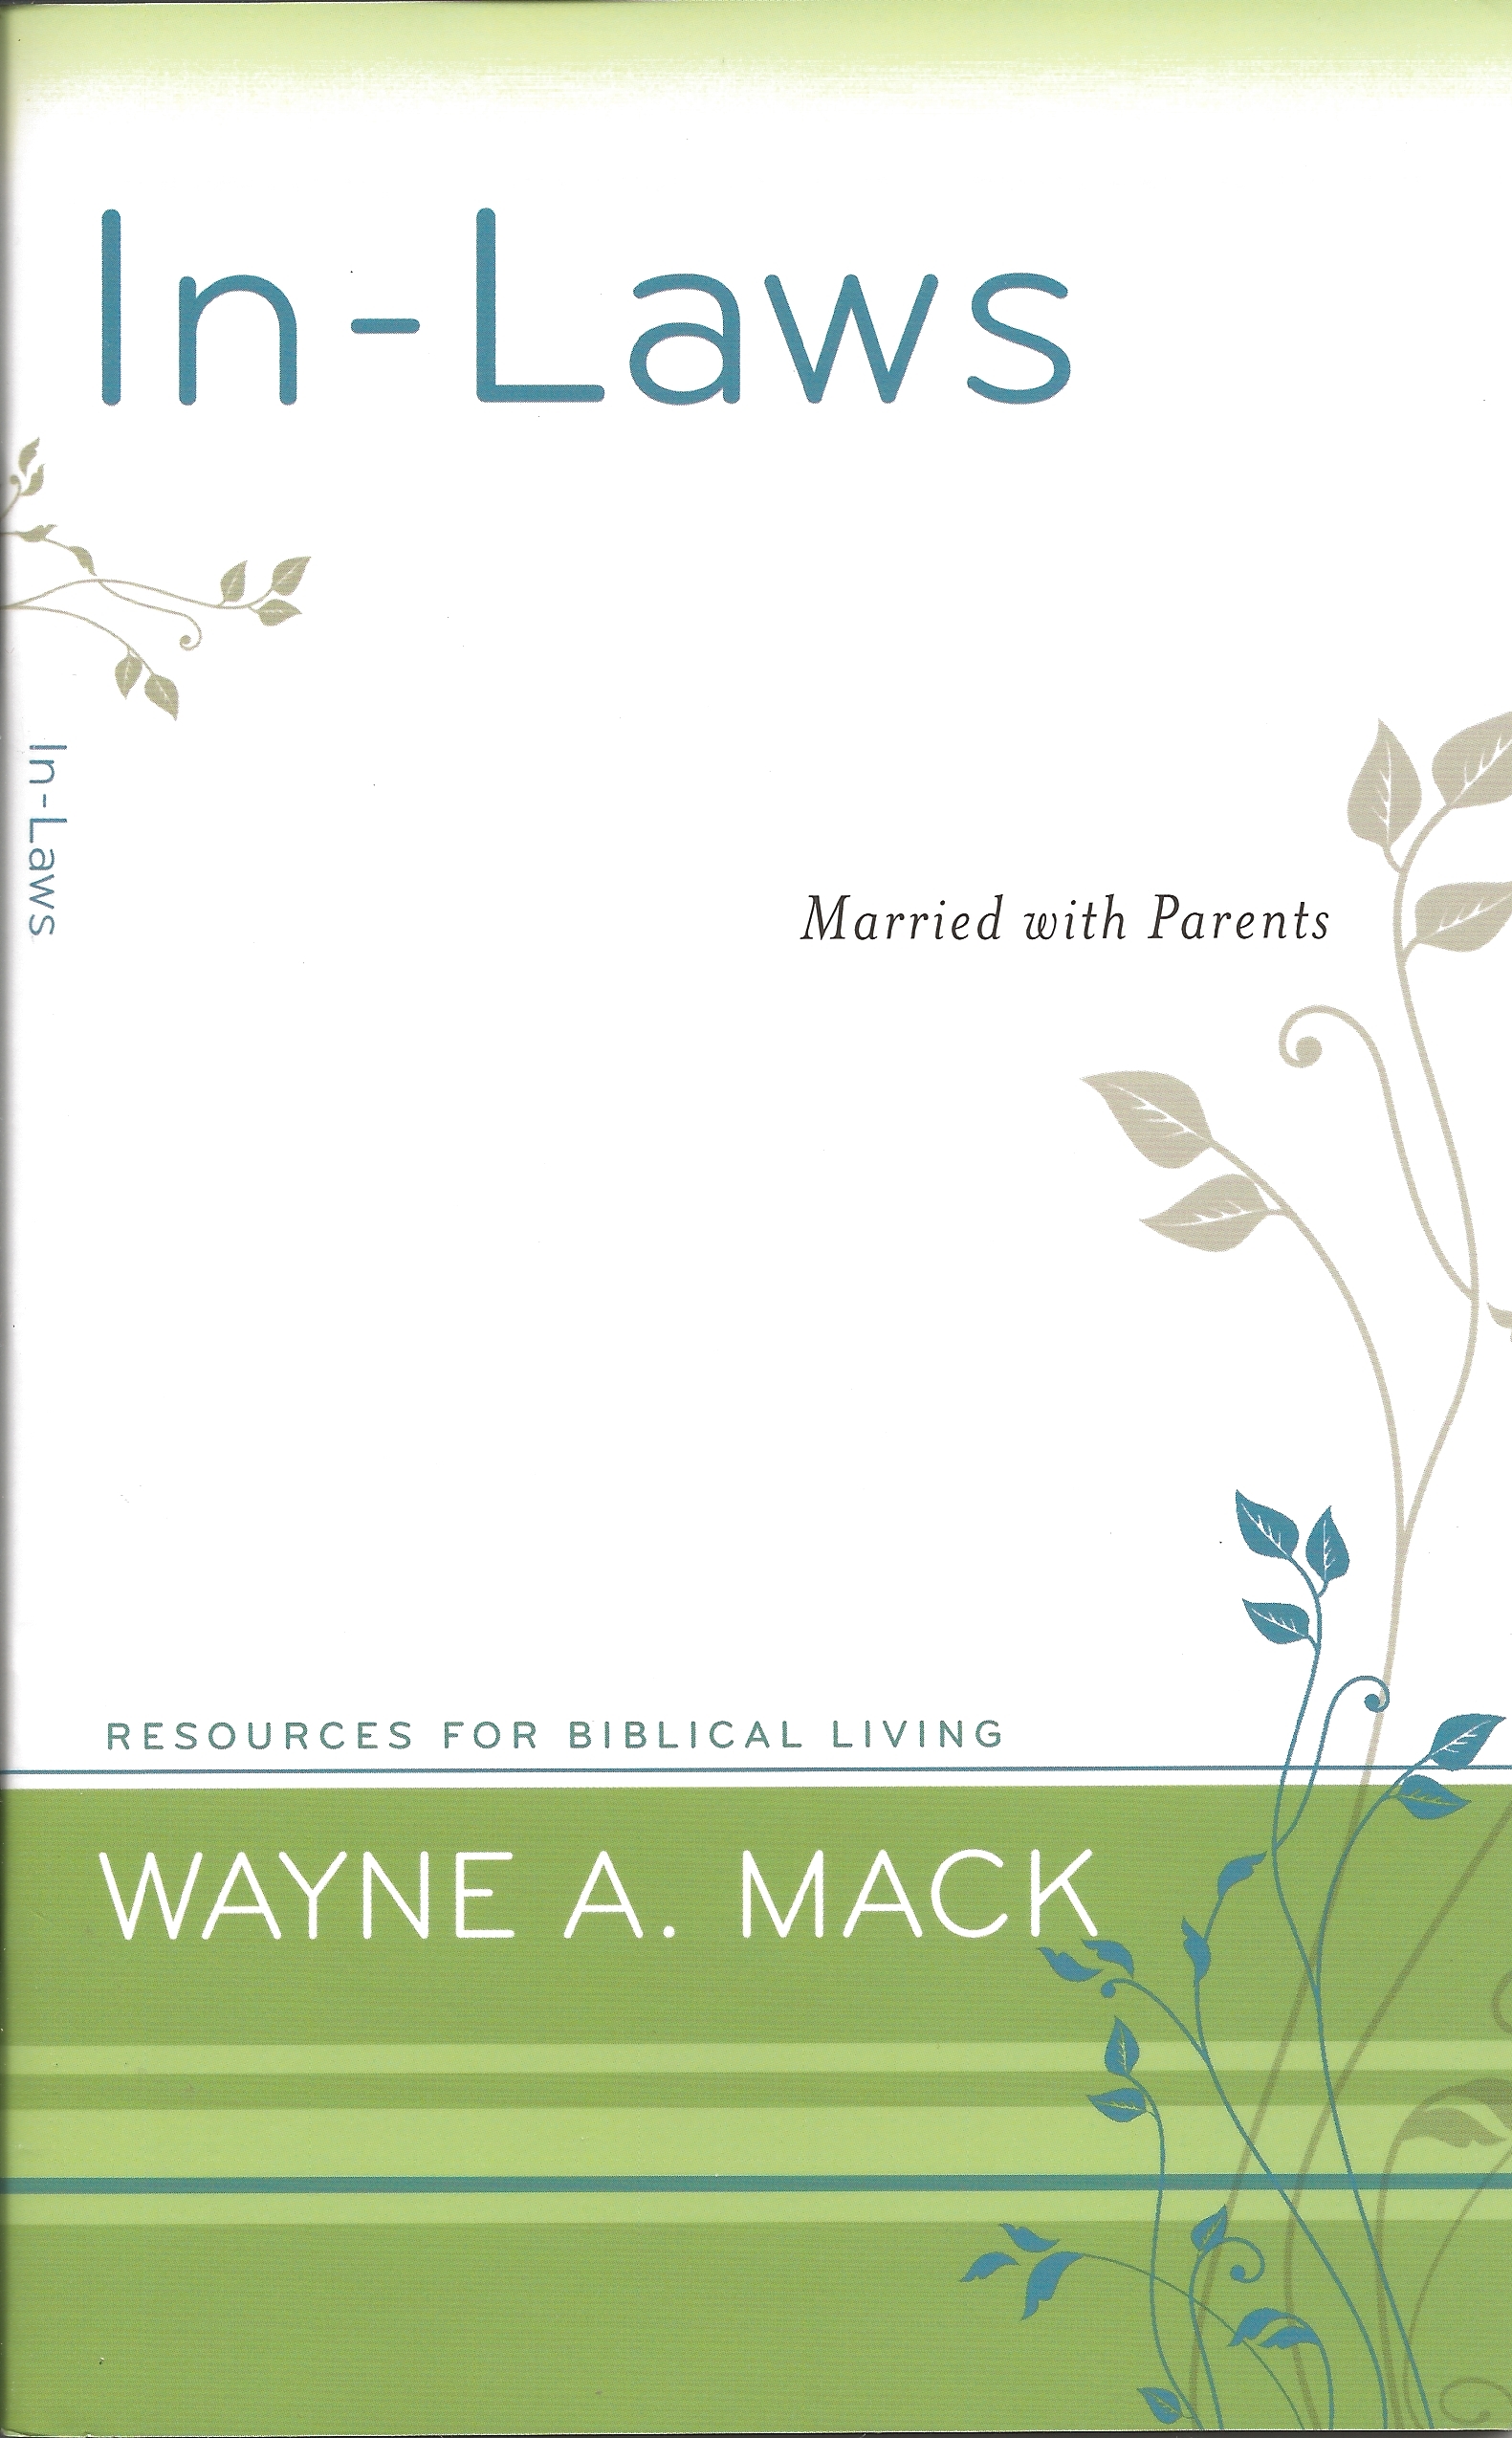 IN-LAWS Wayne Mack